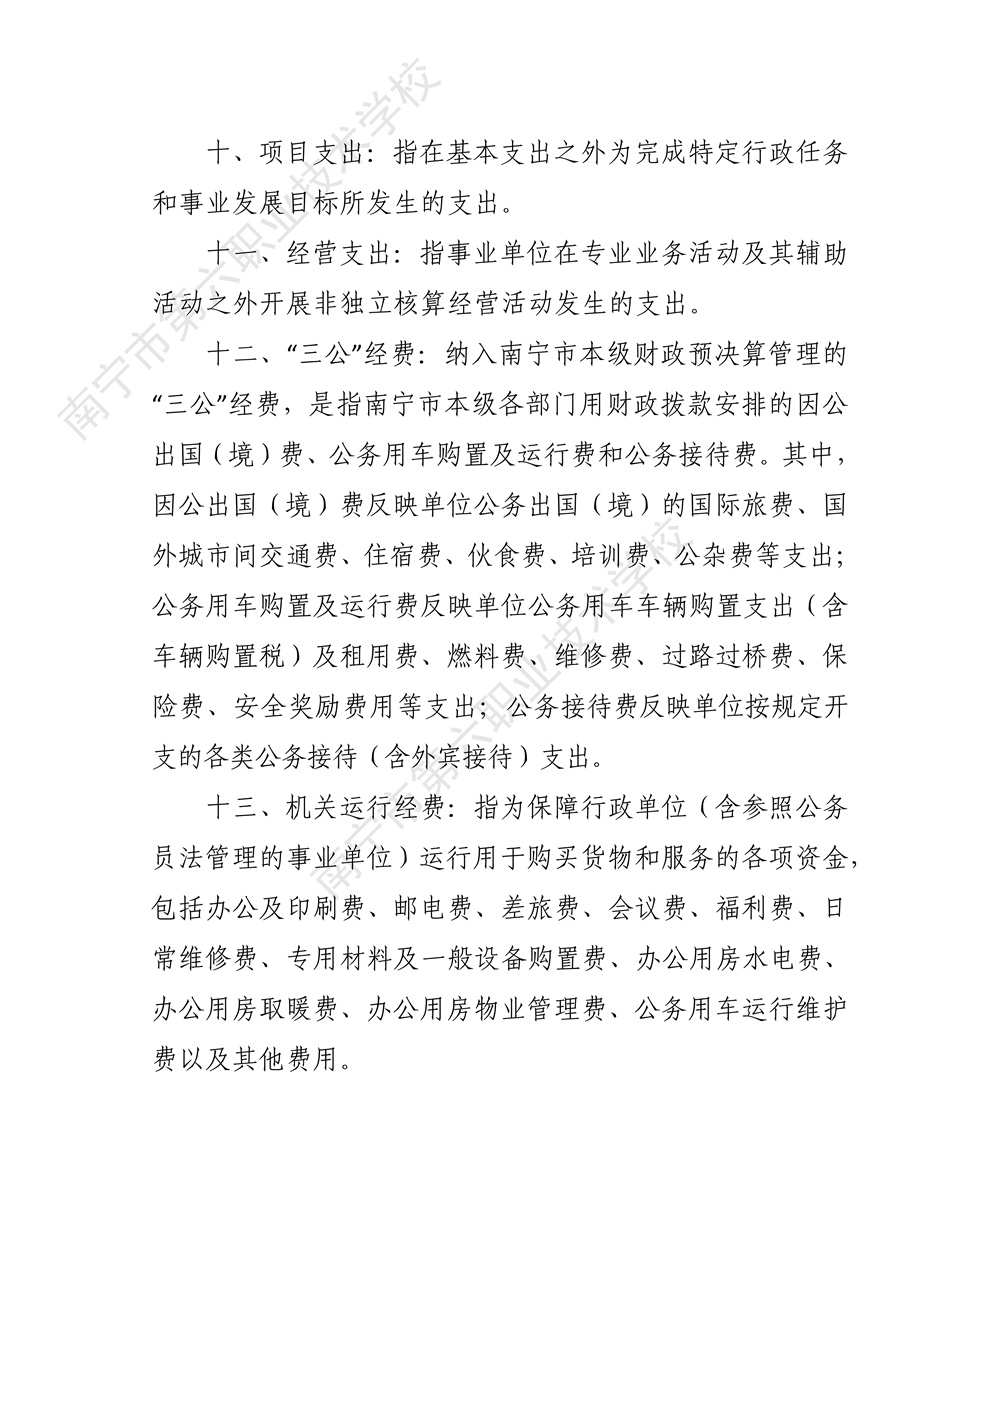 南宁市第六职业技术学校2022年度部门决算公开（终版）_38.jpg